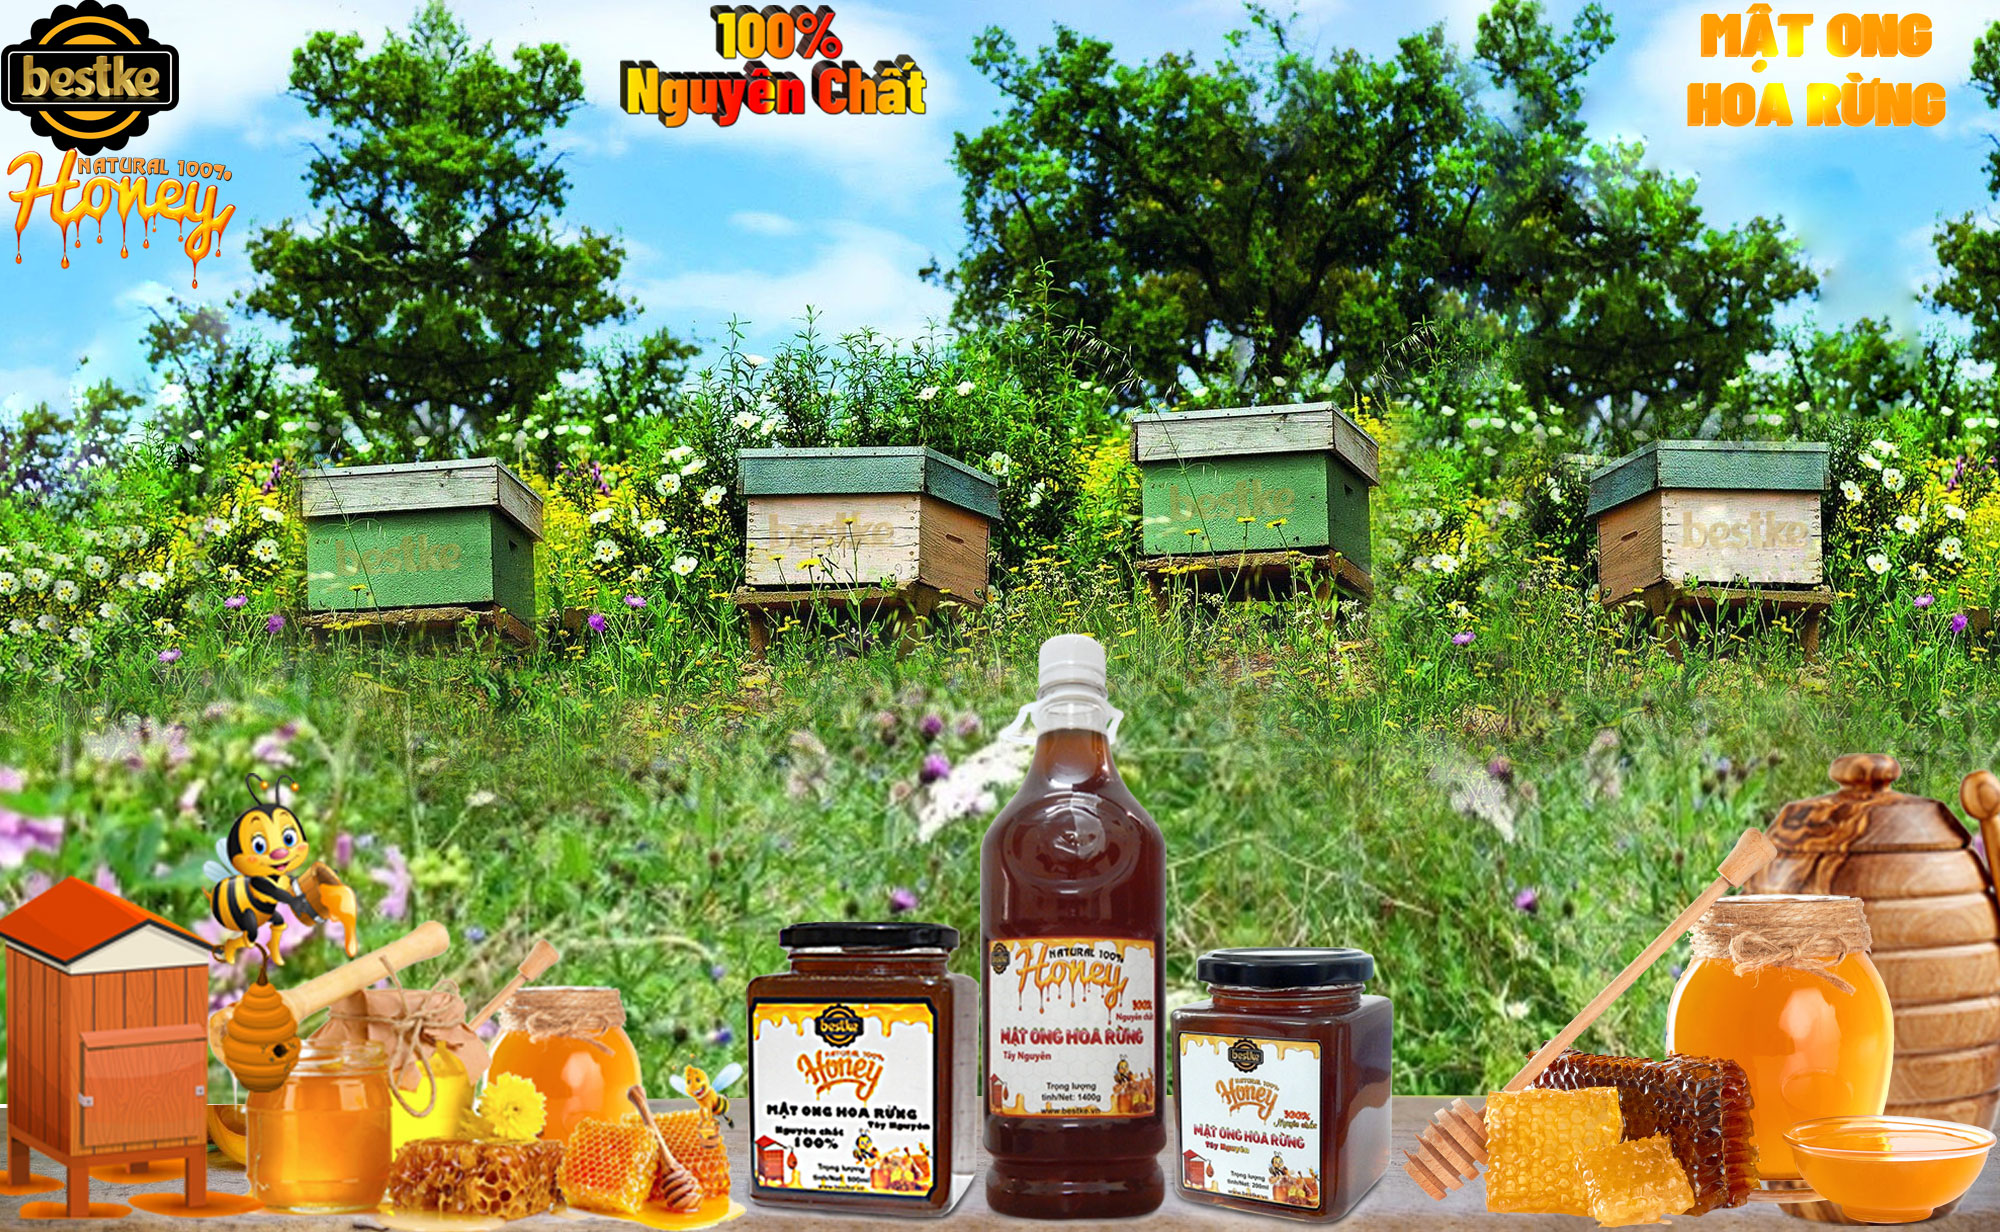 mật ong hoa rừng tây nguyên, nguyên chất, hũ 200ml, 100% natural honey, bestke 4